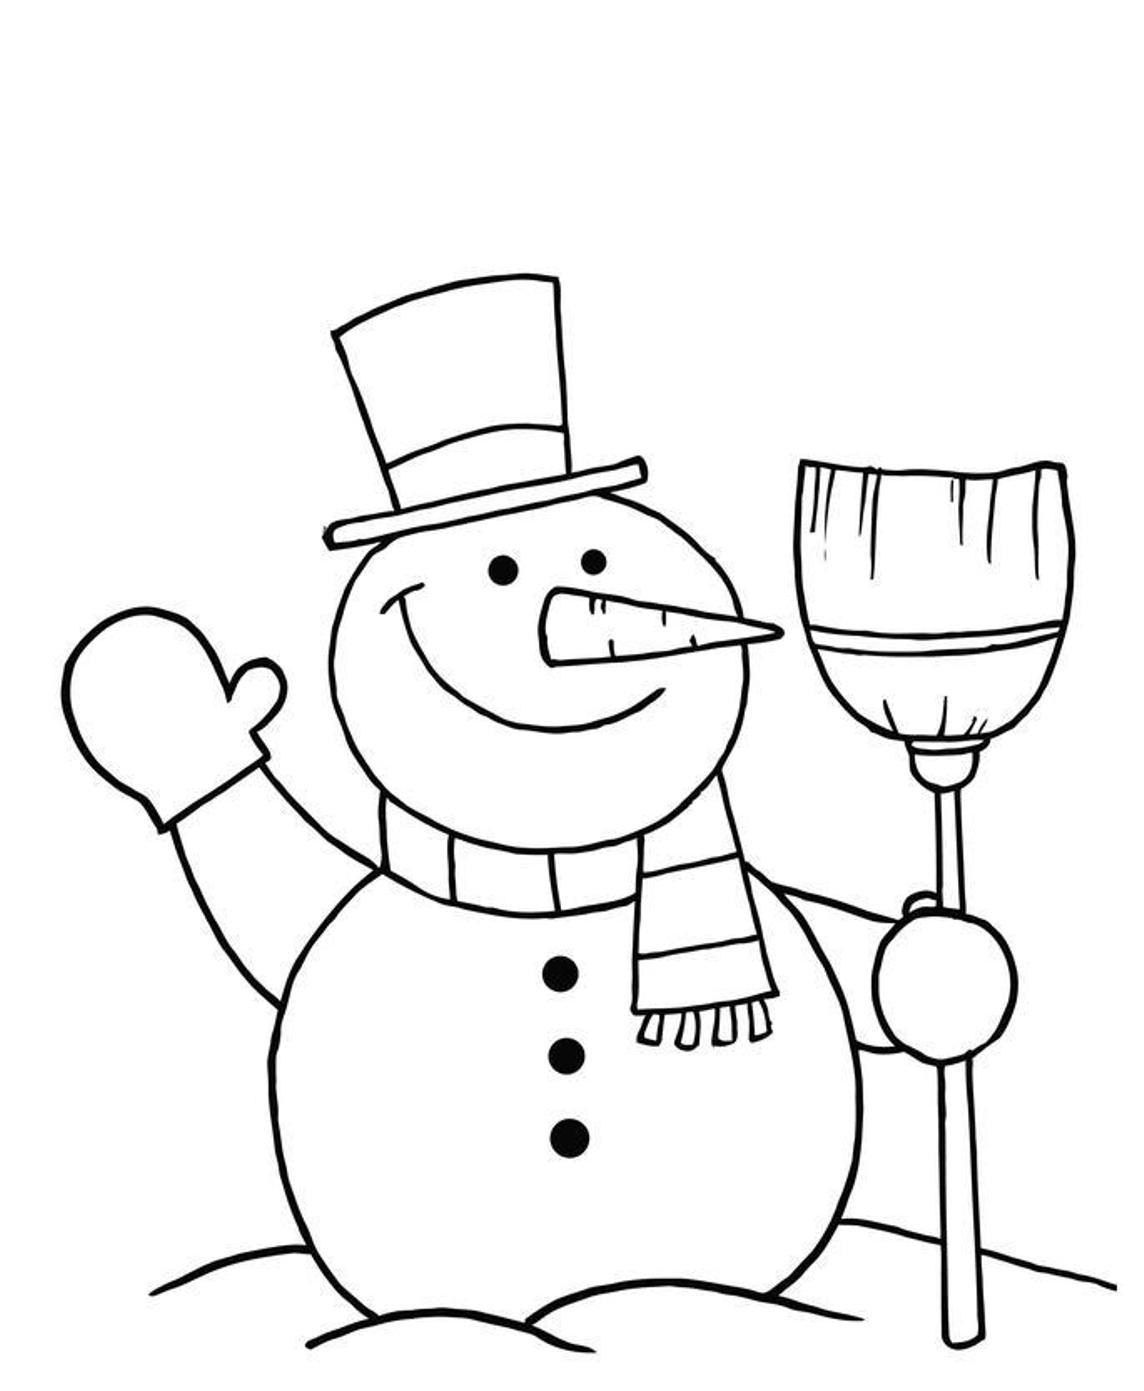 Красивый снеговик - картинки и рисунки. Подборка картинок снеговиков 17